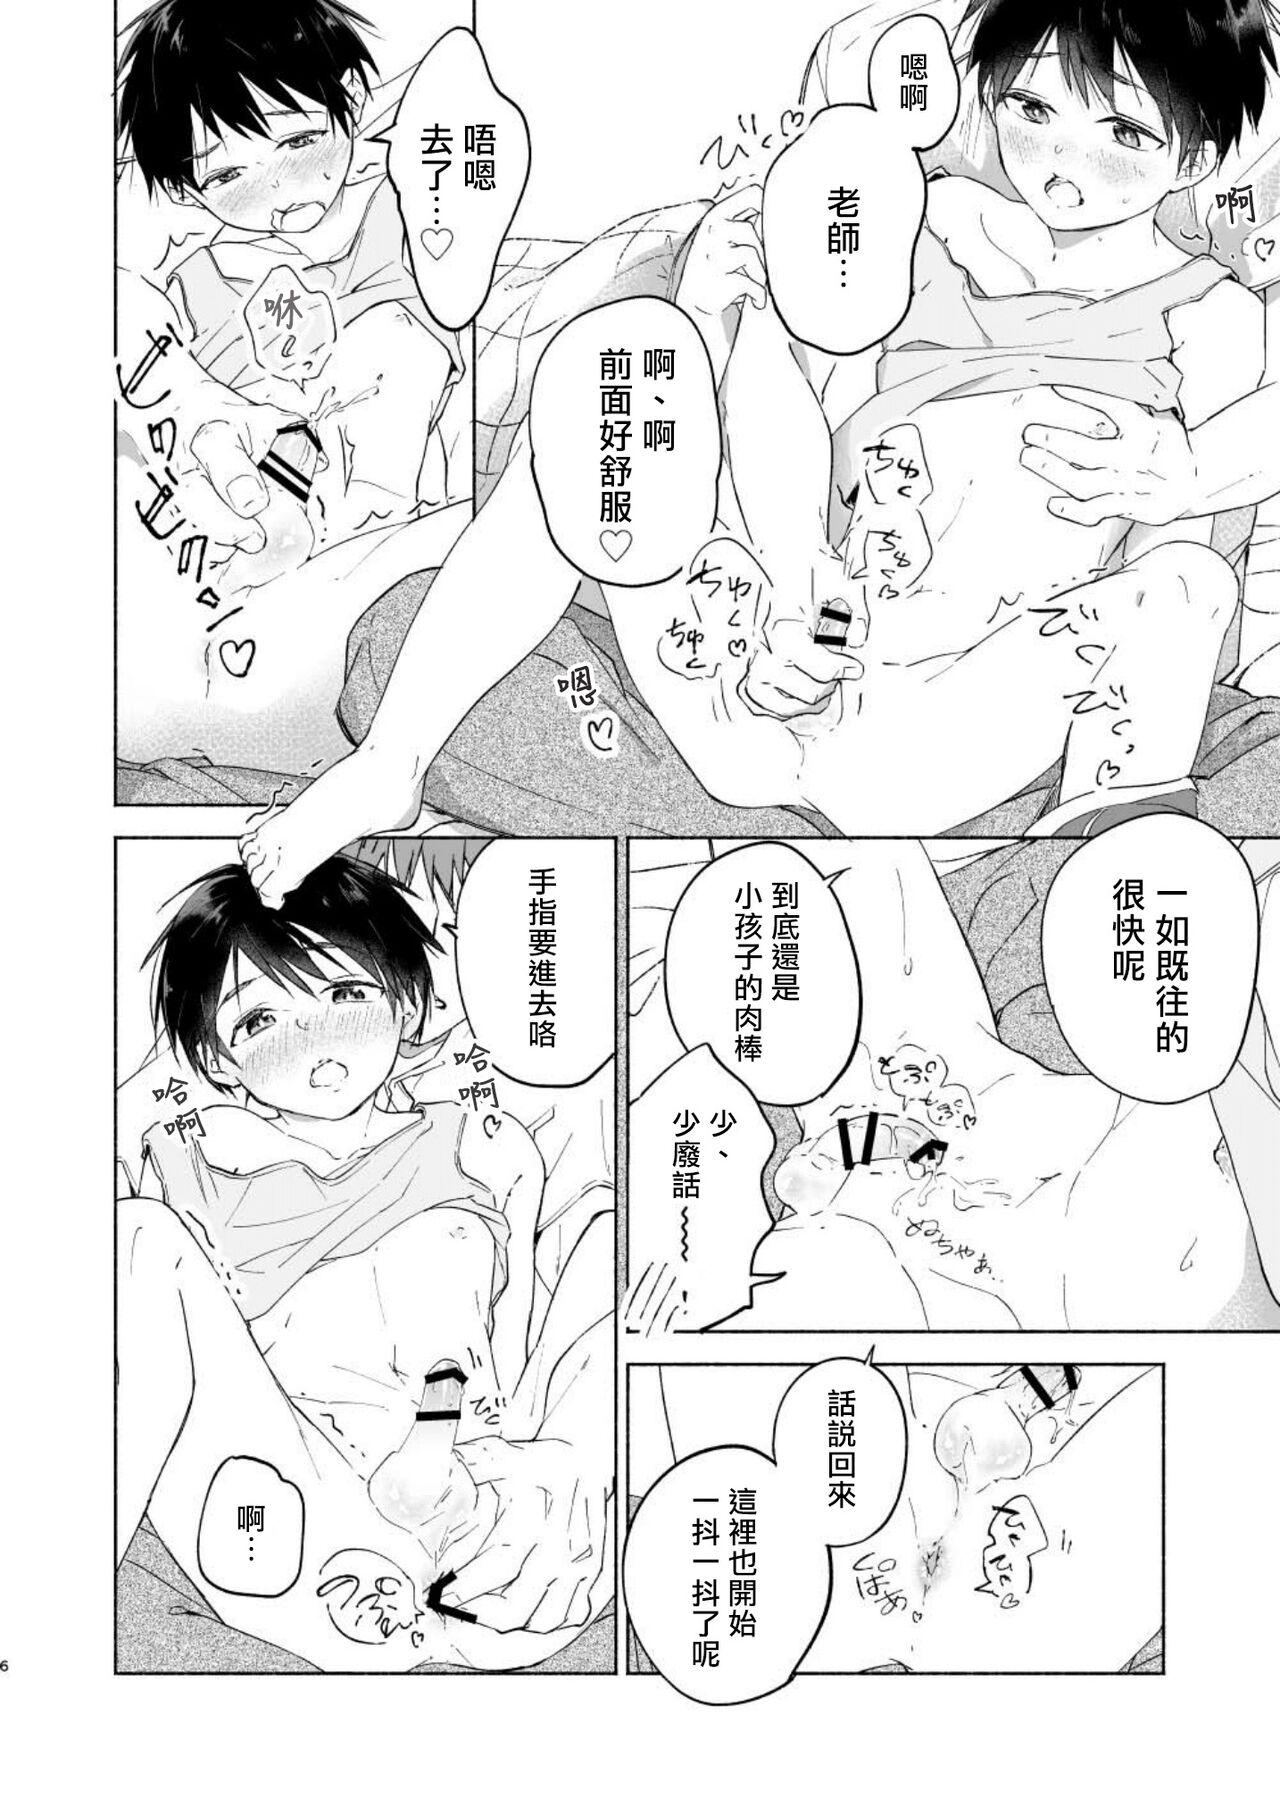 Solo Girl Wataru-kun wa XXX ga Shita丨小涉想要和老师做XXX的事 - Original Short - Page 6